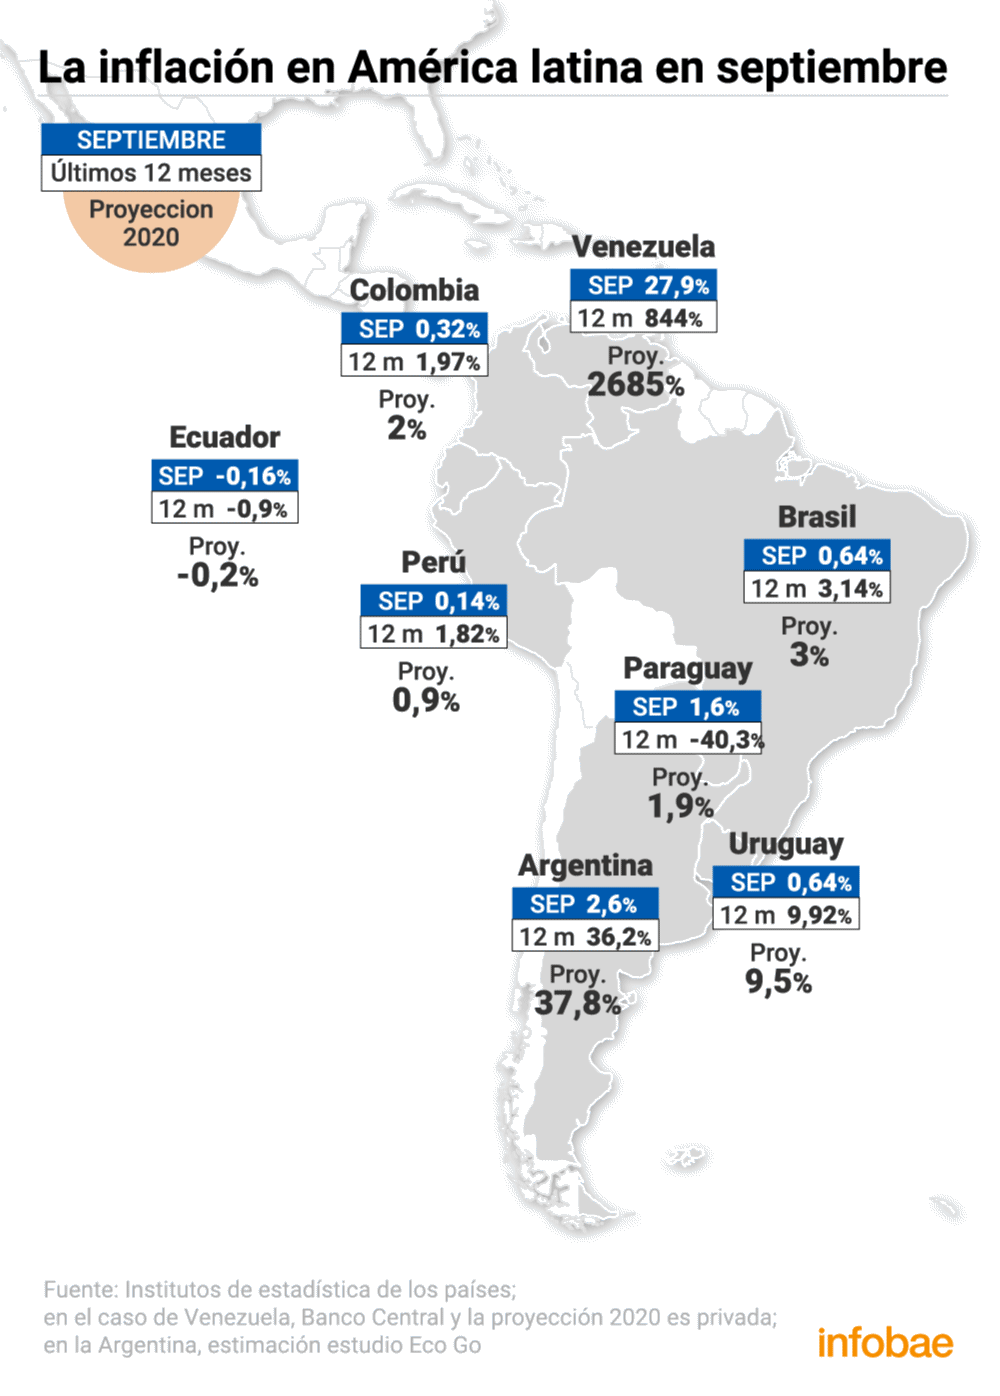 La Argentina Registró Nuevamente En Septiembre La Segunda Inflación Más Alta De América Latina